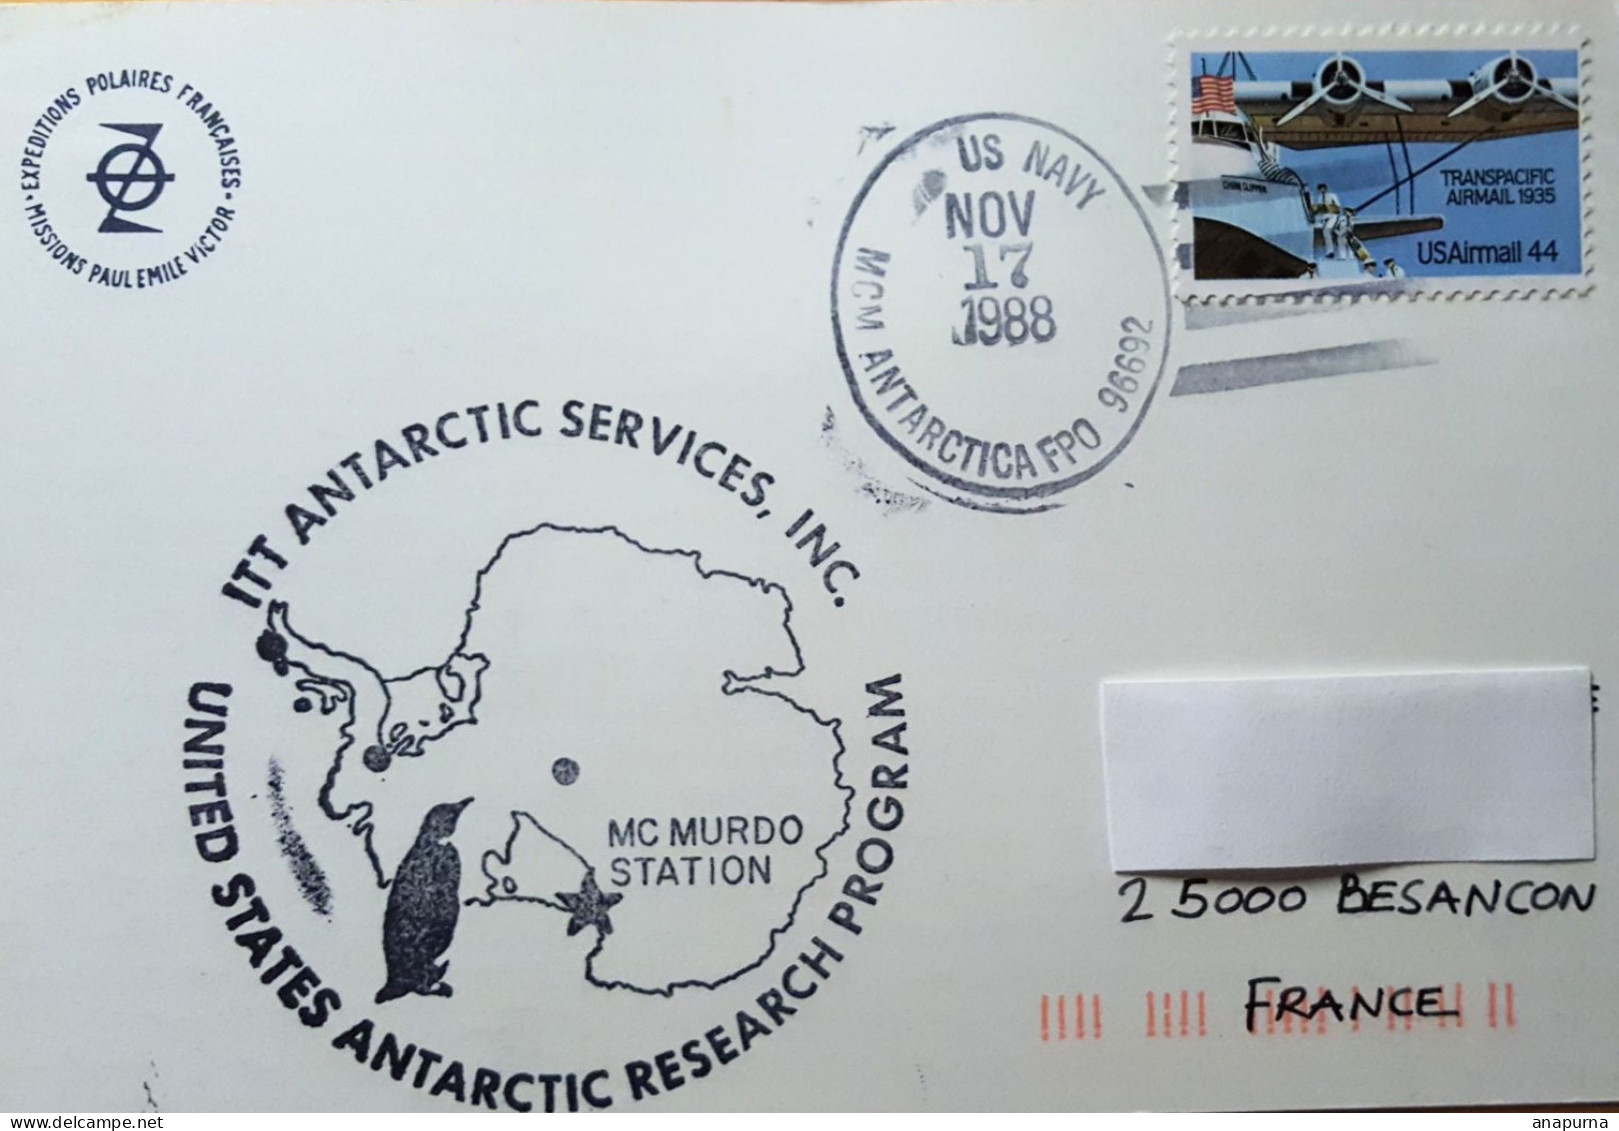 Carte Paul Emile Victor Postée à Mc Murdo 17 Nov 1988 Avec Grand Cachet Illustré US Antarctic Research Program - Research Programs